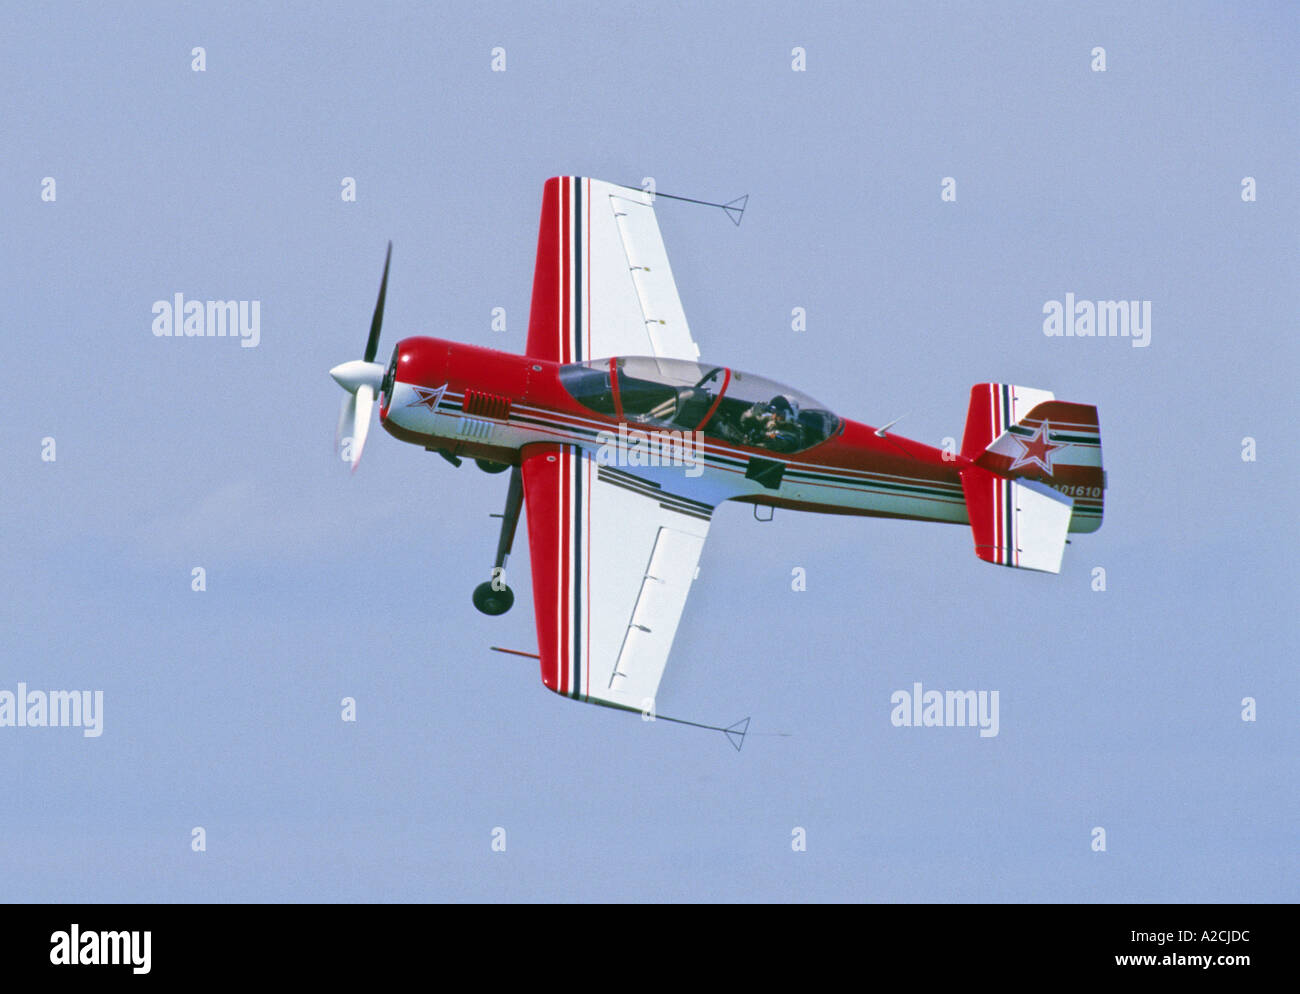 Suchoi SU-29 Sport Kunstflug Flugzeug Stockfotografie - Alamy